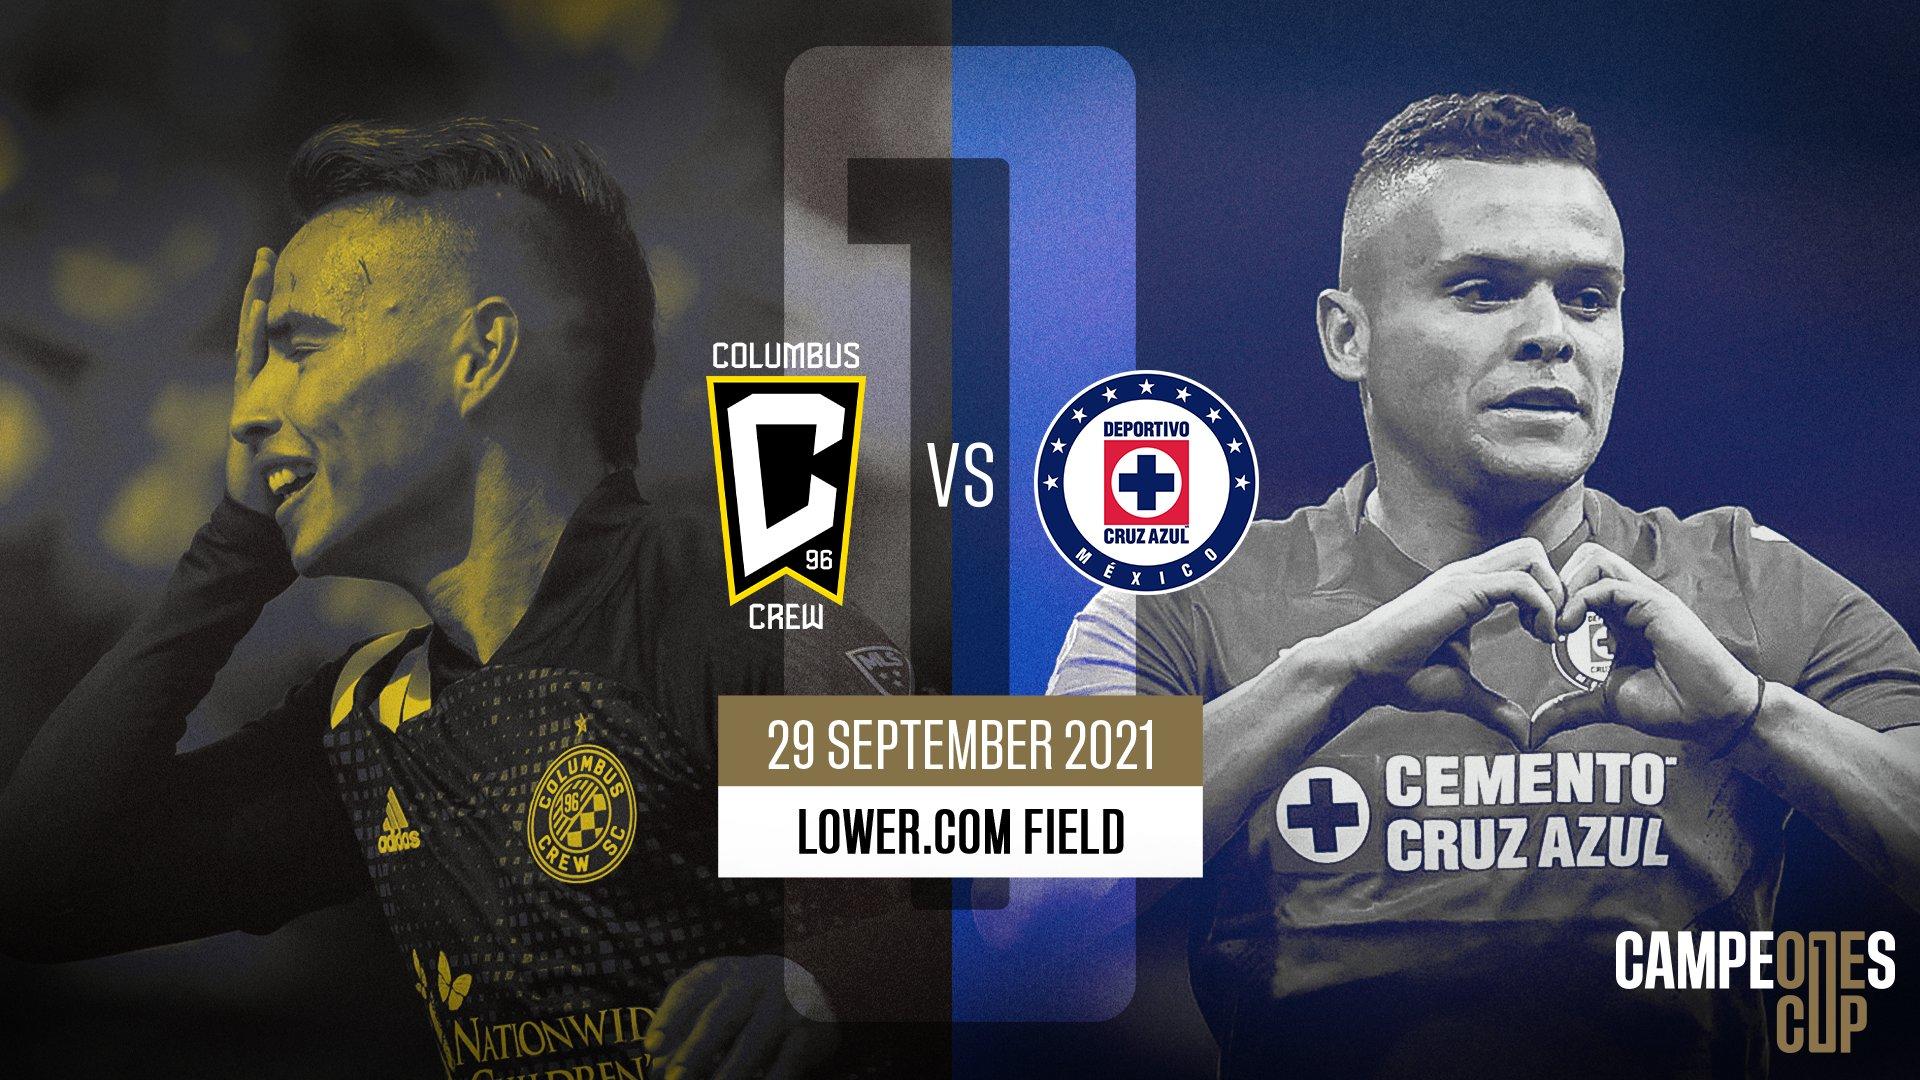 Partido de la MLS entre Columbus Crew y el equipo mexicano Cruz Azul | HCC Event